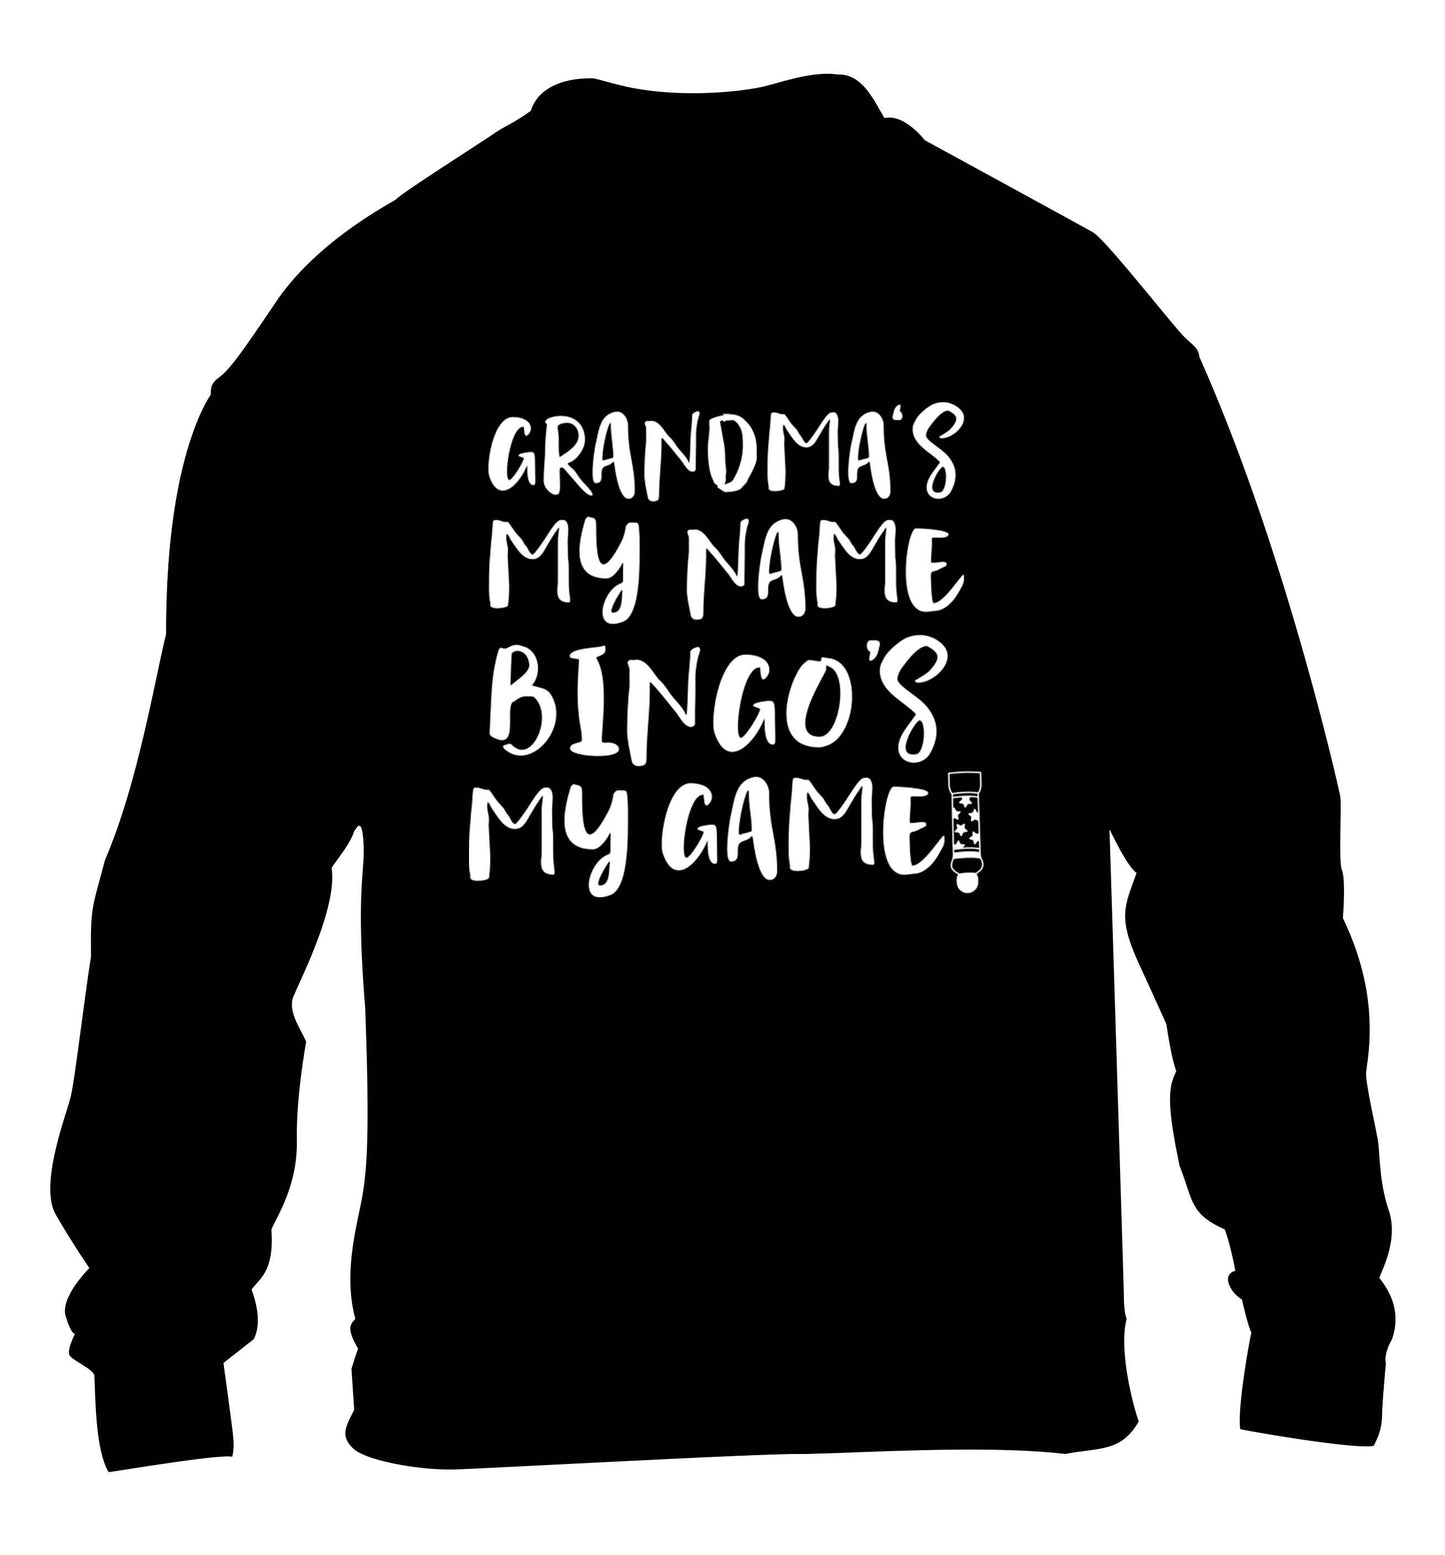 Grandma's my name bingo's my game! children's black sweater 12-13 Years